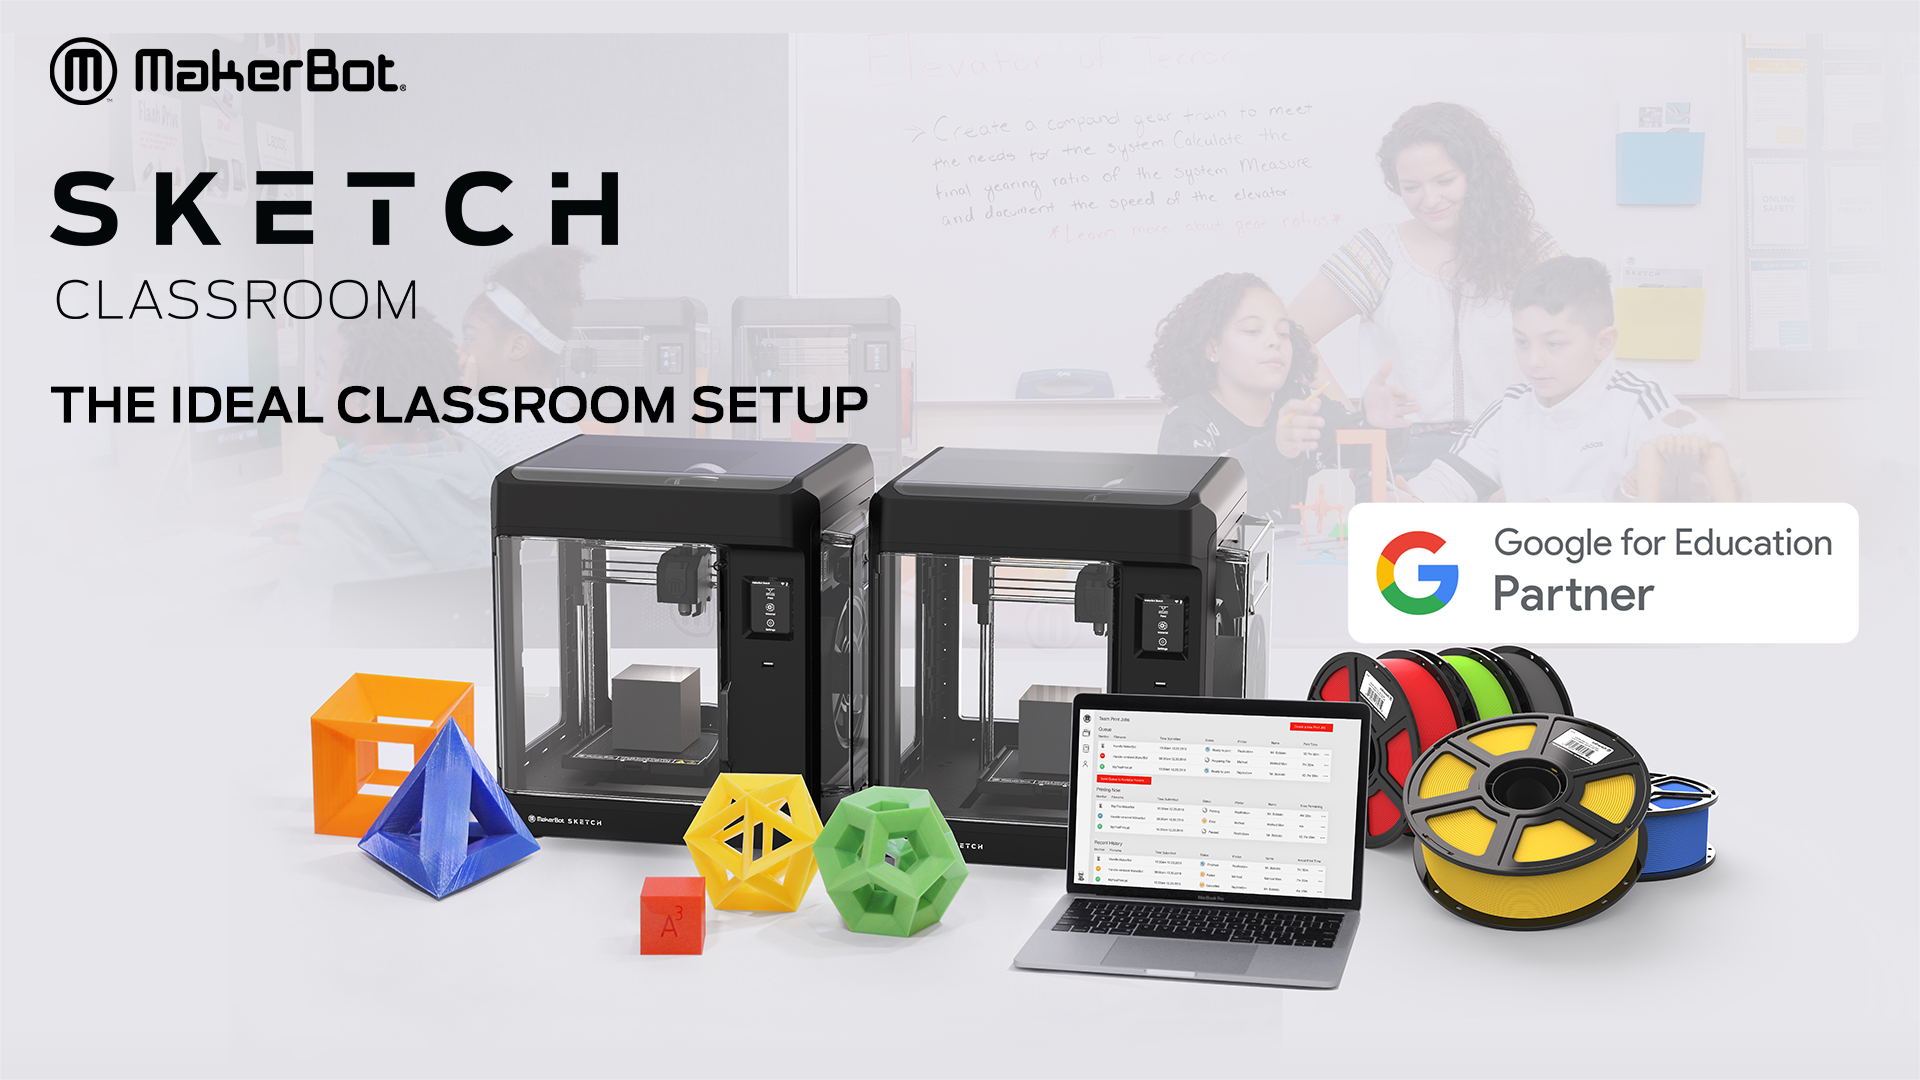 MakerBot SKETCH Classroom 3D Printer